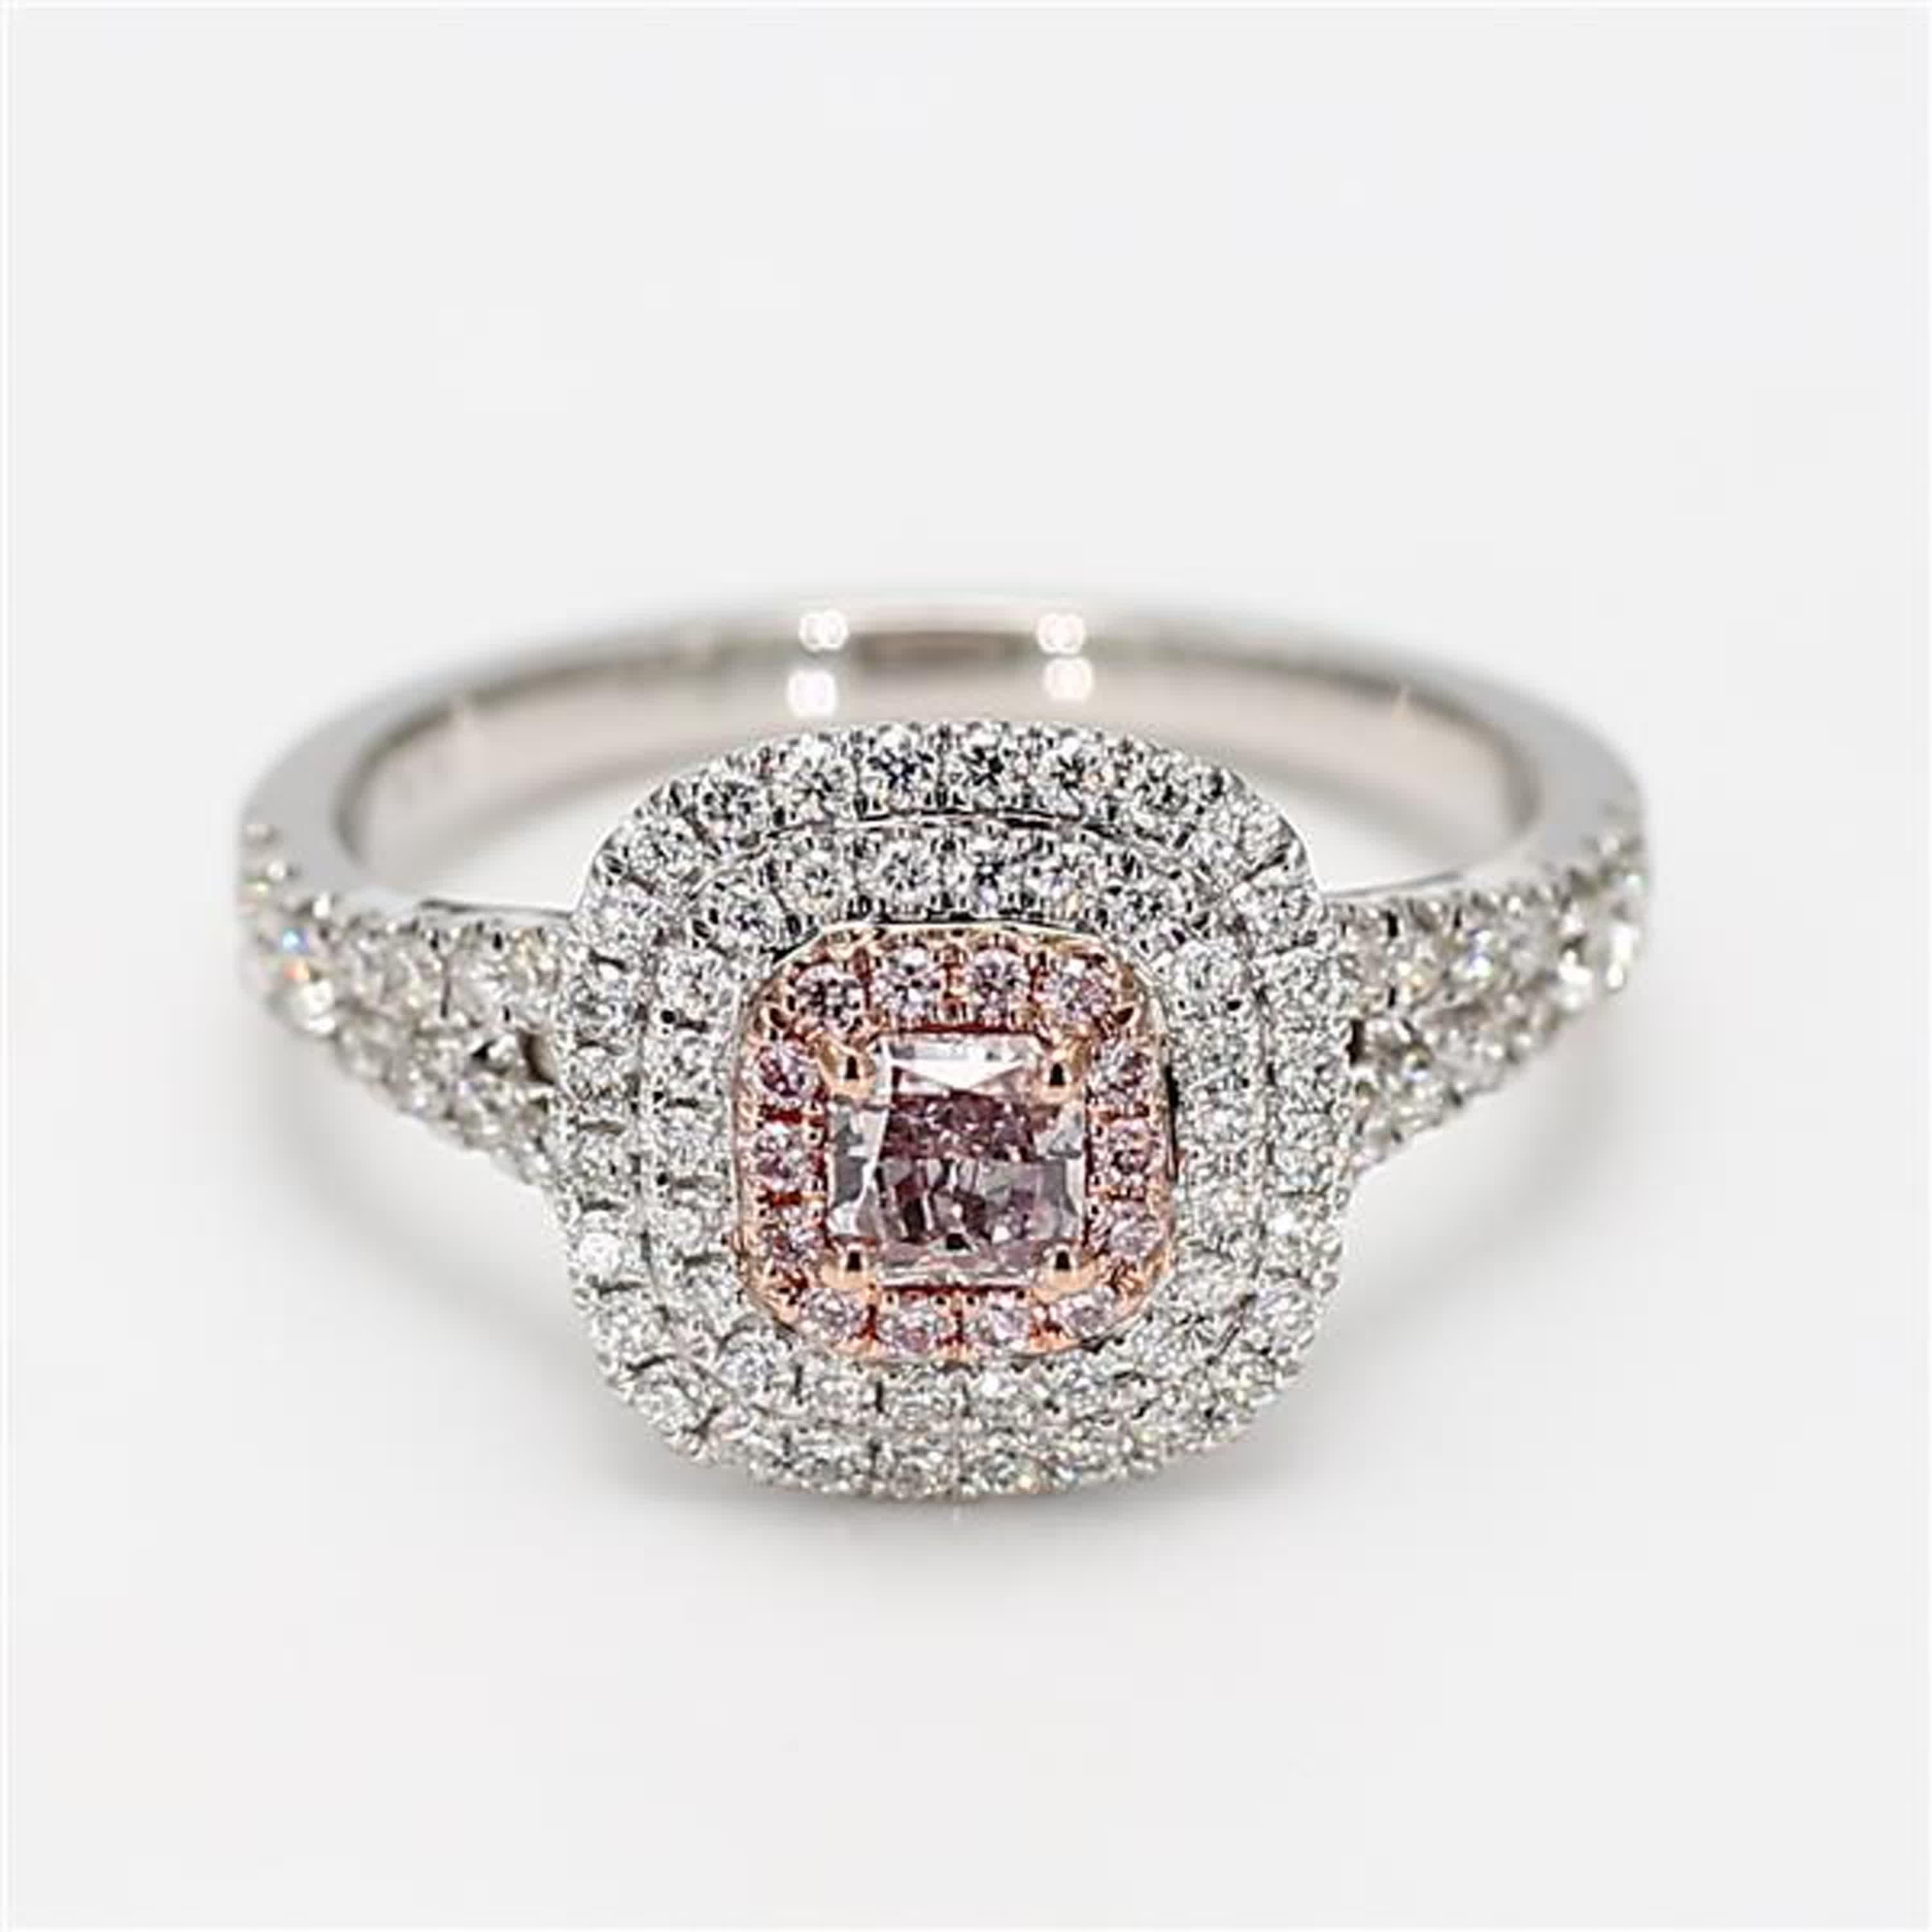 Der klassische GIA-zertifizierte Diamantring von RareGemWorld. In einer schönen Fassung aus 18 Karat Rosé- und Weißgold mit einem natürlichen rosa Diamanten im Strahlenschliff. Der rosafarbene Diamant ist umgeben von einem runden natürlichen rosa